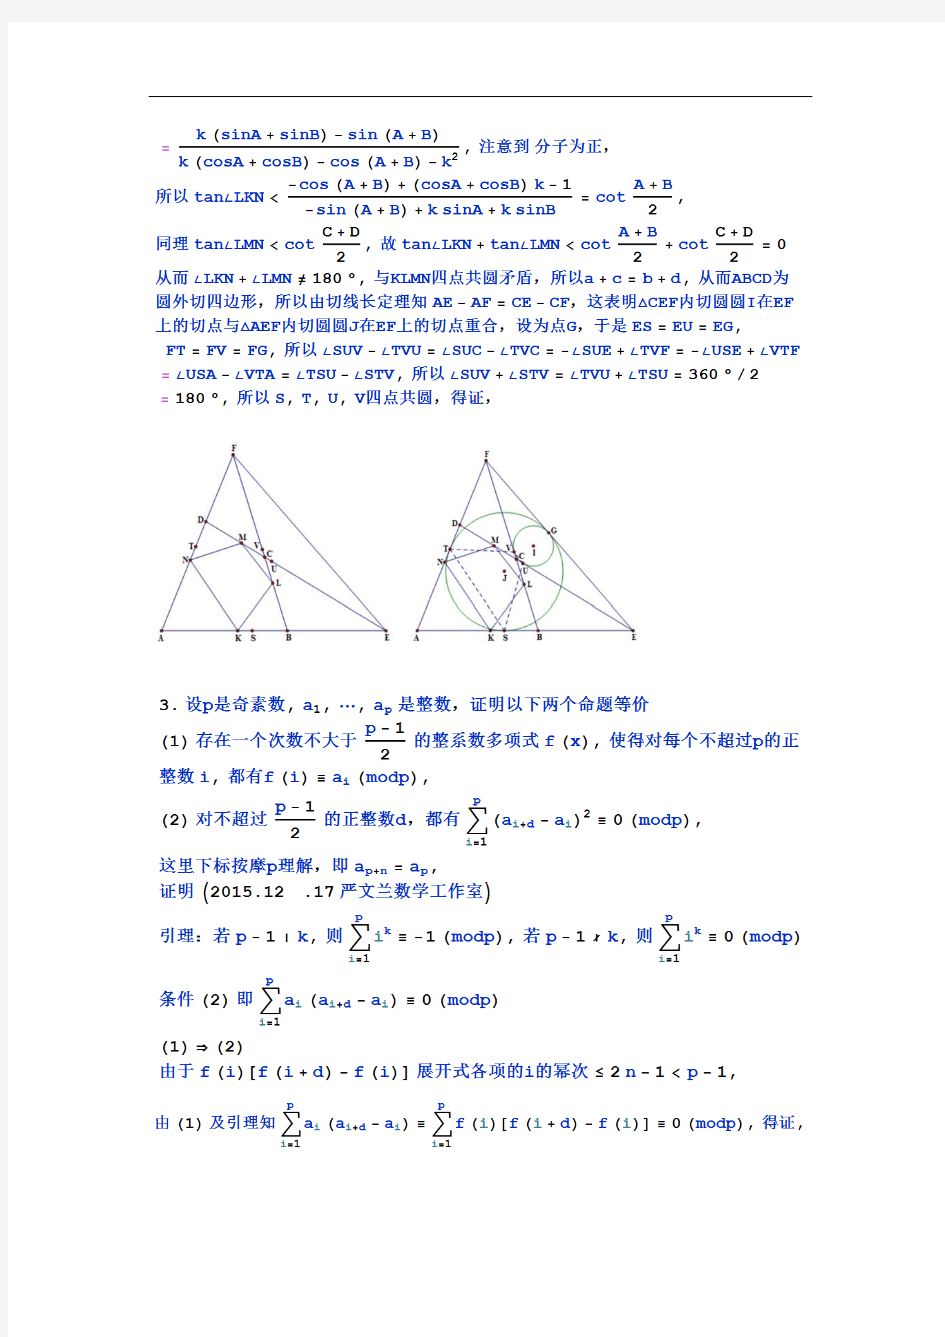 2015年中国数学奥林匹克试题解答